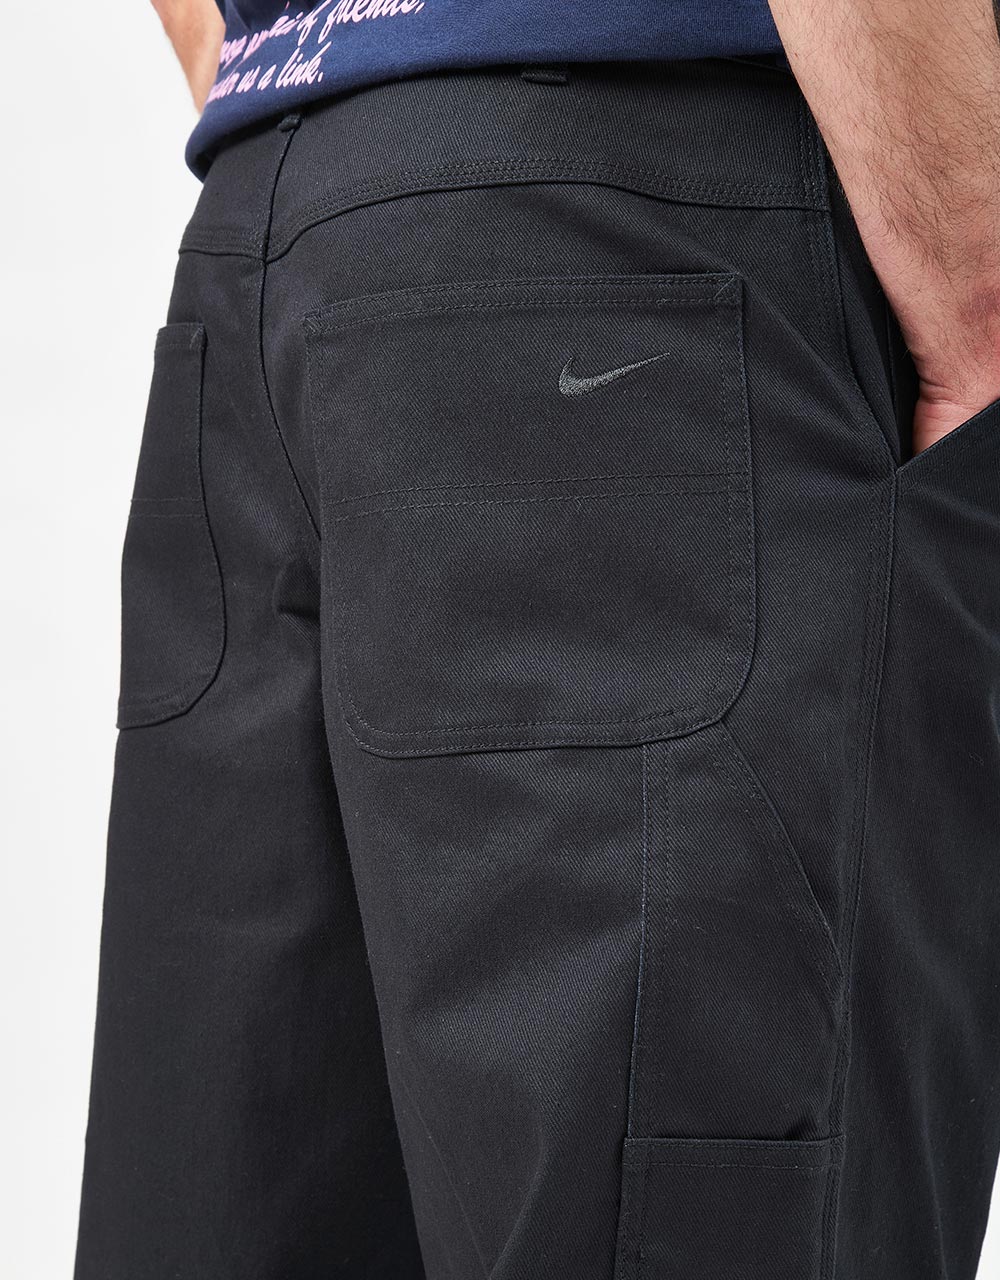 Nike SB Carpenter Pant - Black/Black